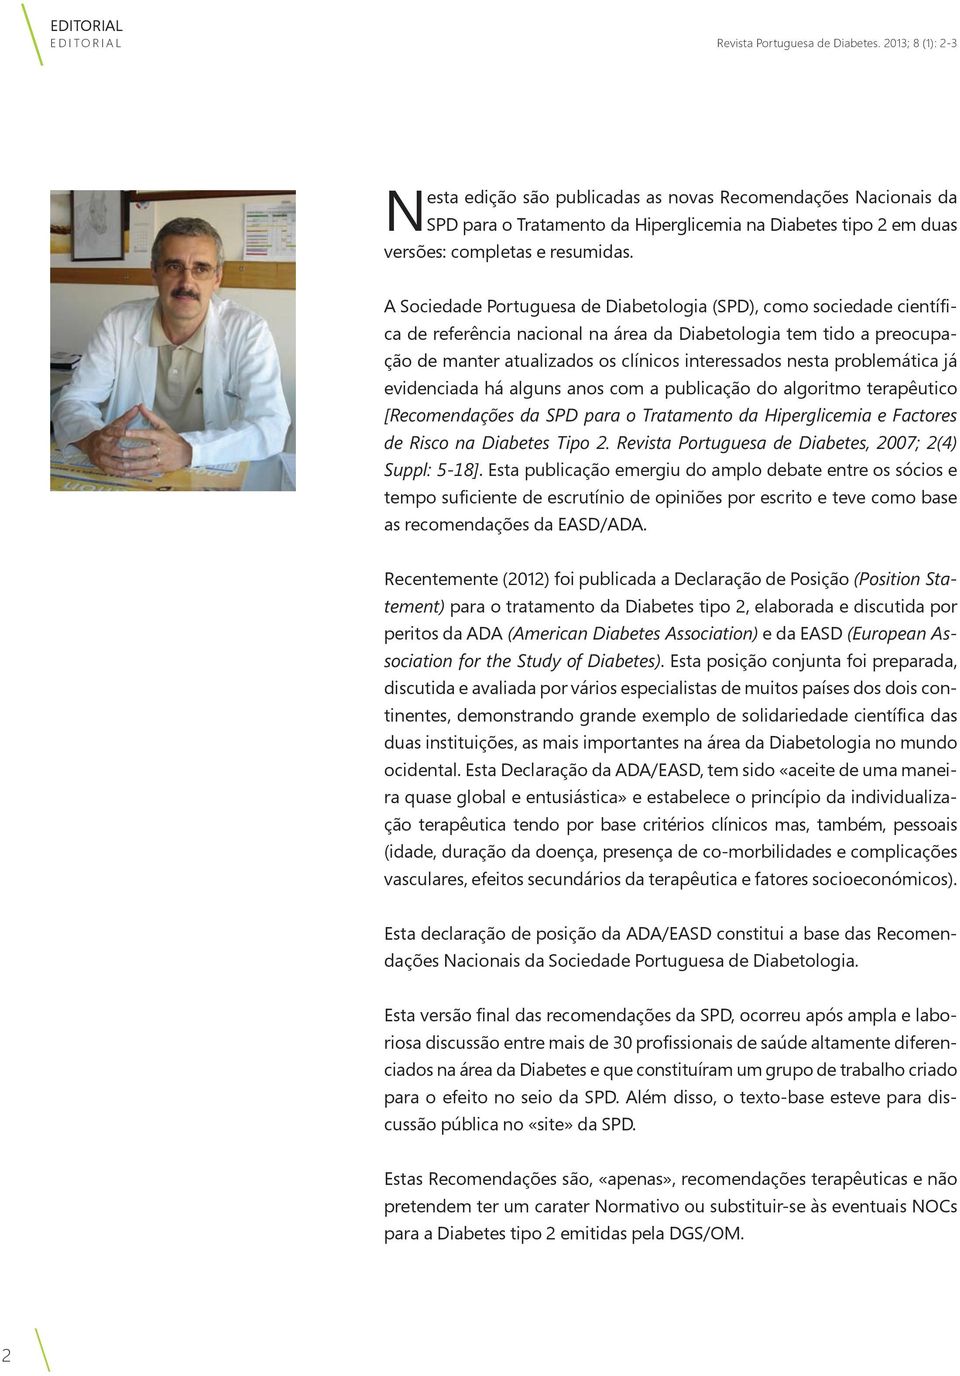 A Sociedade Portuguesa de Diabetologia (SPD), como sociedade científica de referência nacional na área da Diabetologia tem tido a preocupação de manter atualizados os clínicos interessados nesta